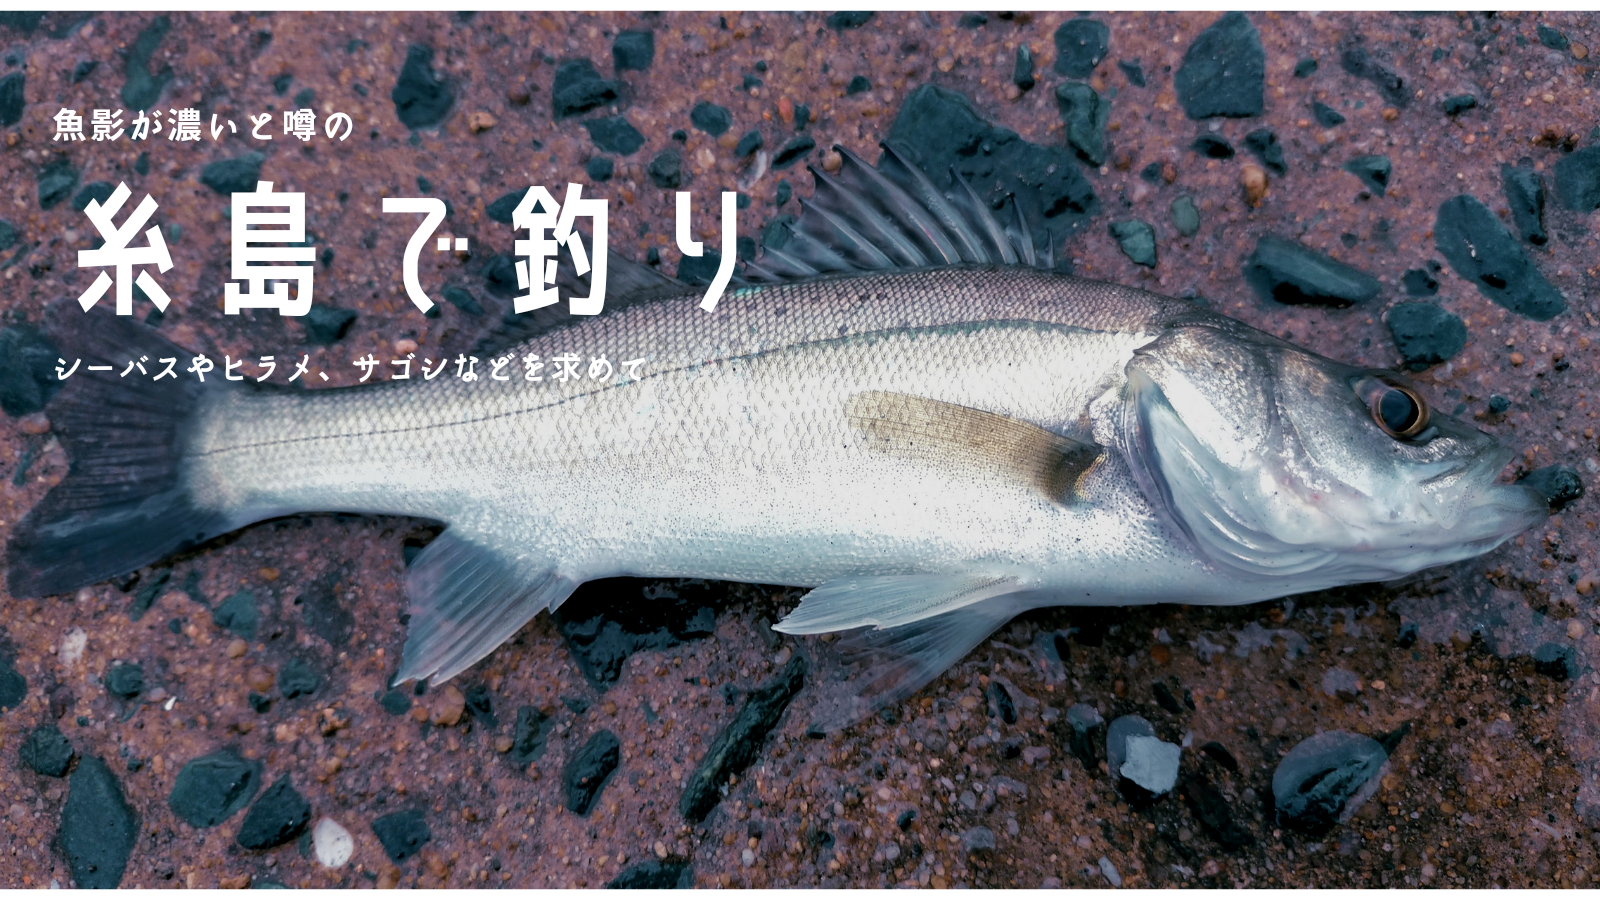 21年 糸島の唐泊漁港など周遊した感想と釣果は シーバスやヒラメ サゴシを求めて 福津の津屋崎漁港へも